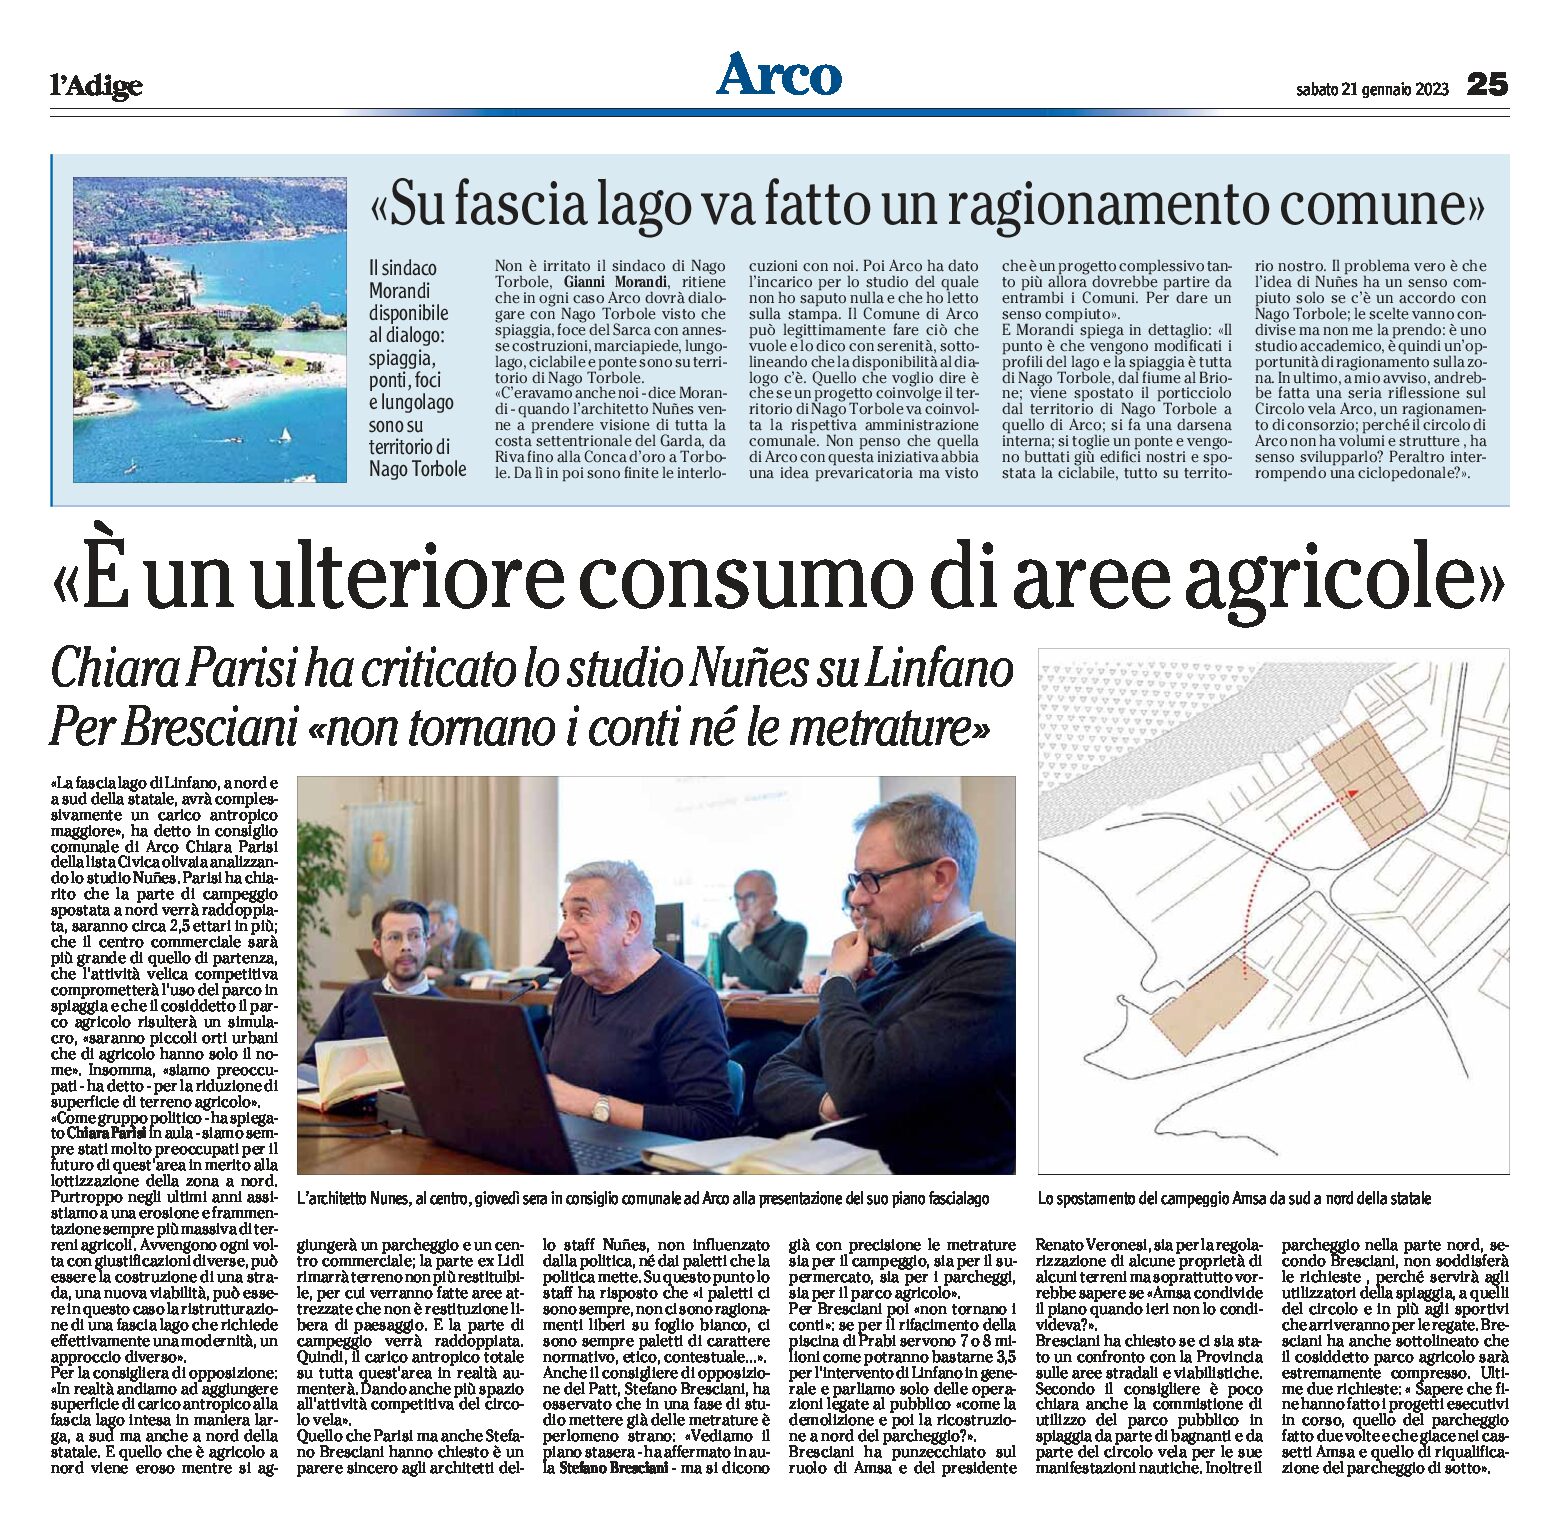 Arco: Parisi ha criticato lo studio Nunes sul Linfano “è un ulteriore consumo di aree agricole”